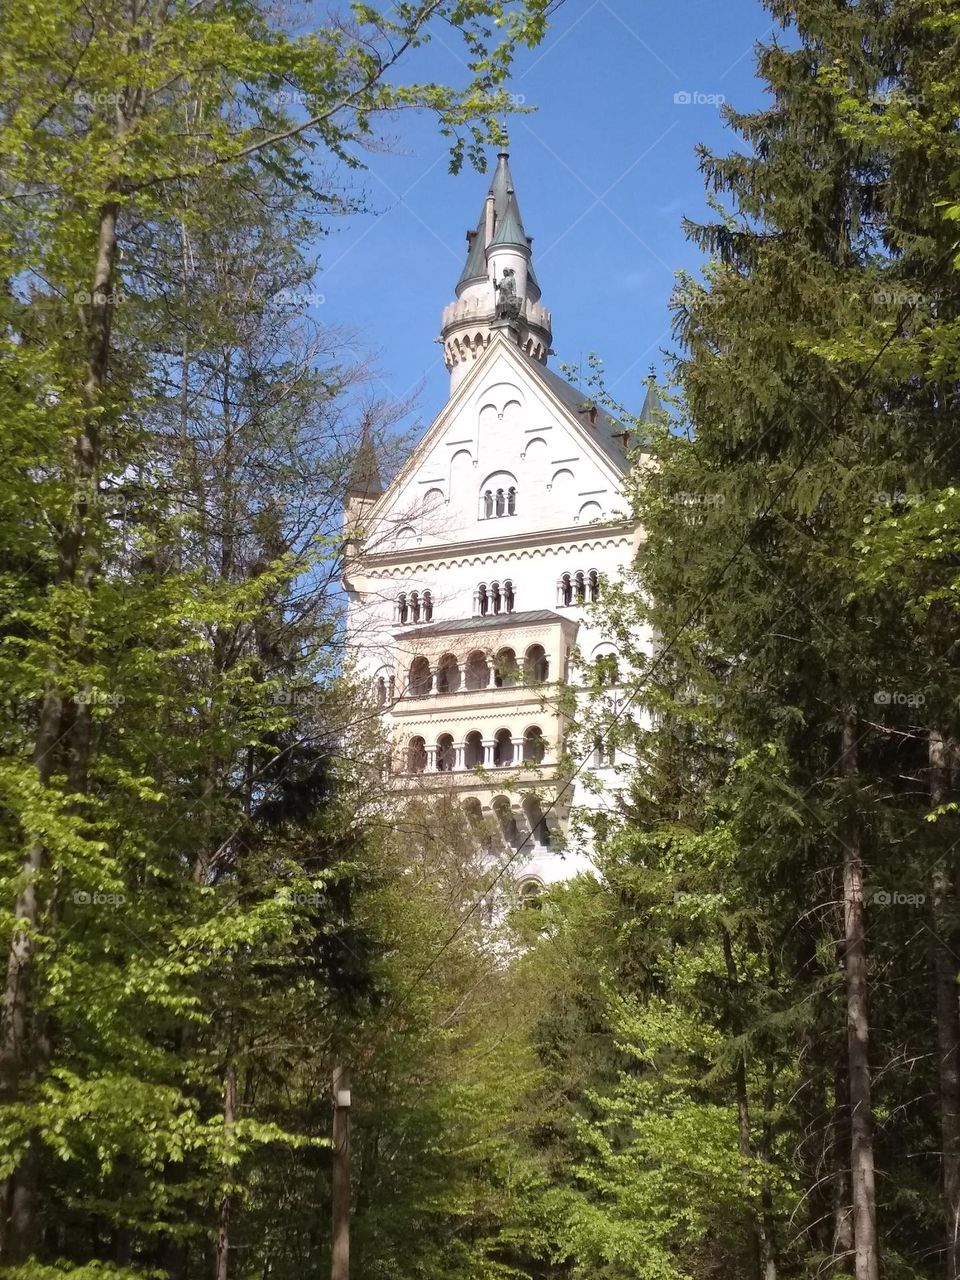 Cinderella castle in Germany - Neuschwanstein